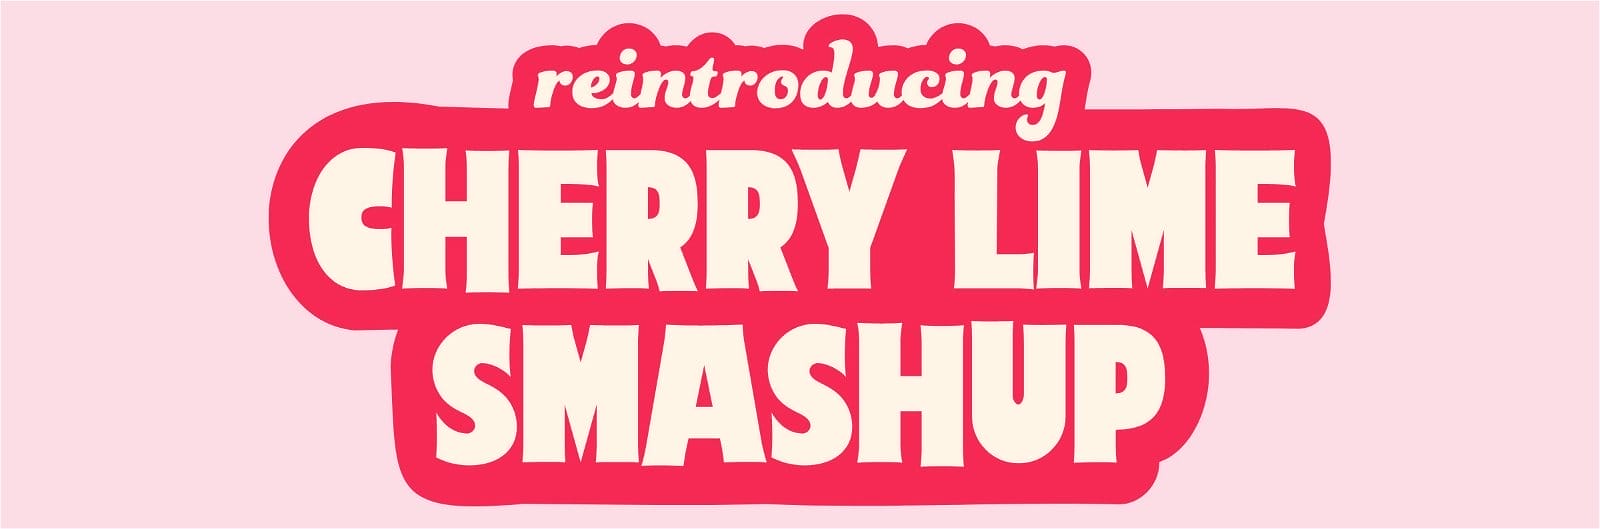 reintroducing Cherry Lime Smashup